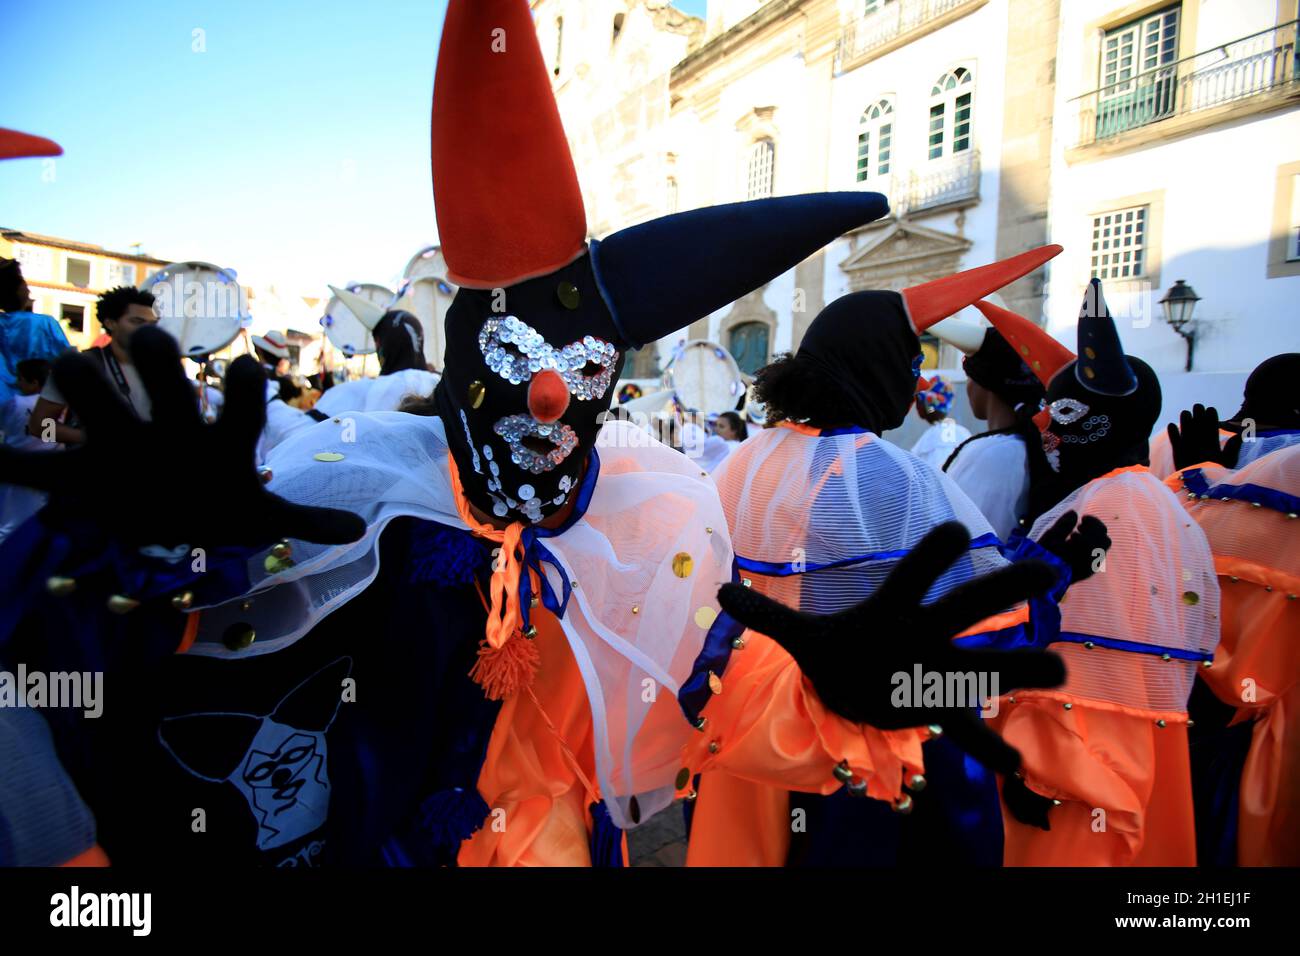 salvador, bahia / brasilien - 5. februar 2016: Maskierte Männer werden während des Karnevals in der Stadt Salvador in Pelourinhogesehen. *** Ortsüberschrift *** Stockfoto